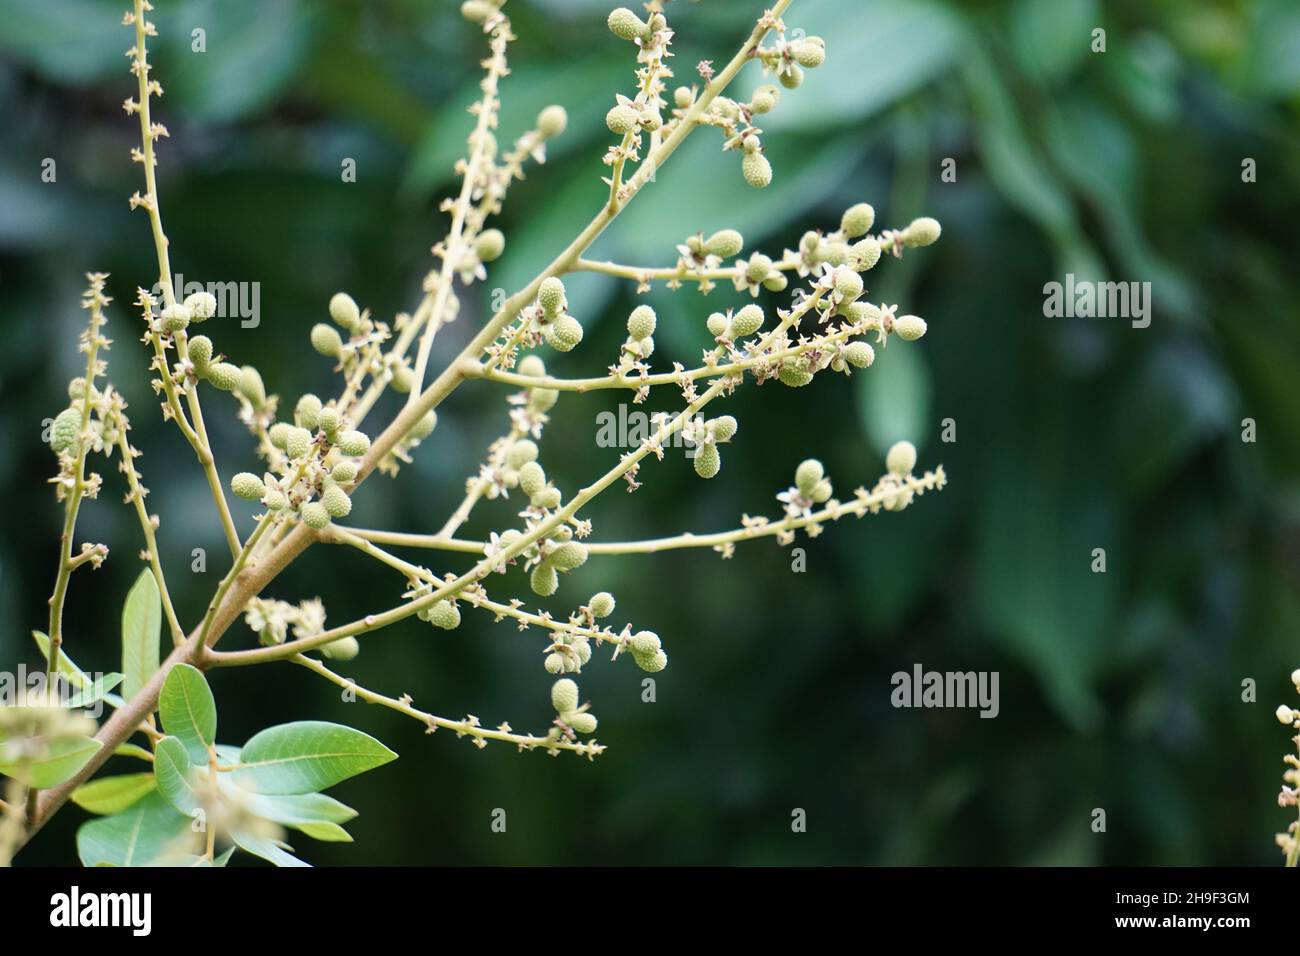 Dimocarpus longan (auch Longan, Lengkeng, kelengkeng, mata kucing, longan, Dimocarpus longan) Blätter auf die Natur Stockfoto